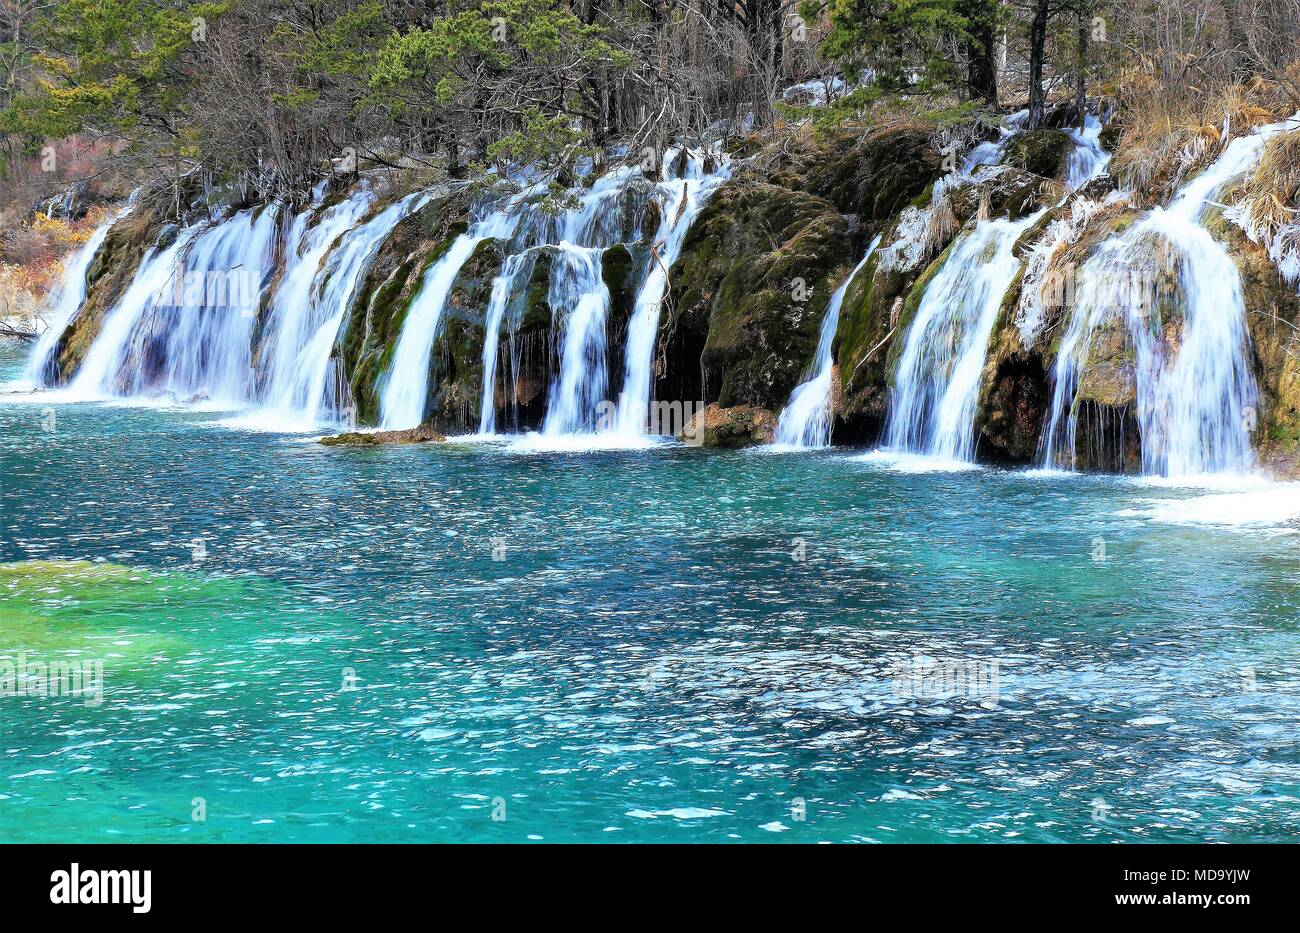 Schönen Wasserfall und azurblauen See mit glasklarem Wasser unter fallen Holz in Jiuzhaigou Nature Reserve (Jiuzhai Valley National Park) von Sichuan pr Stockfoto